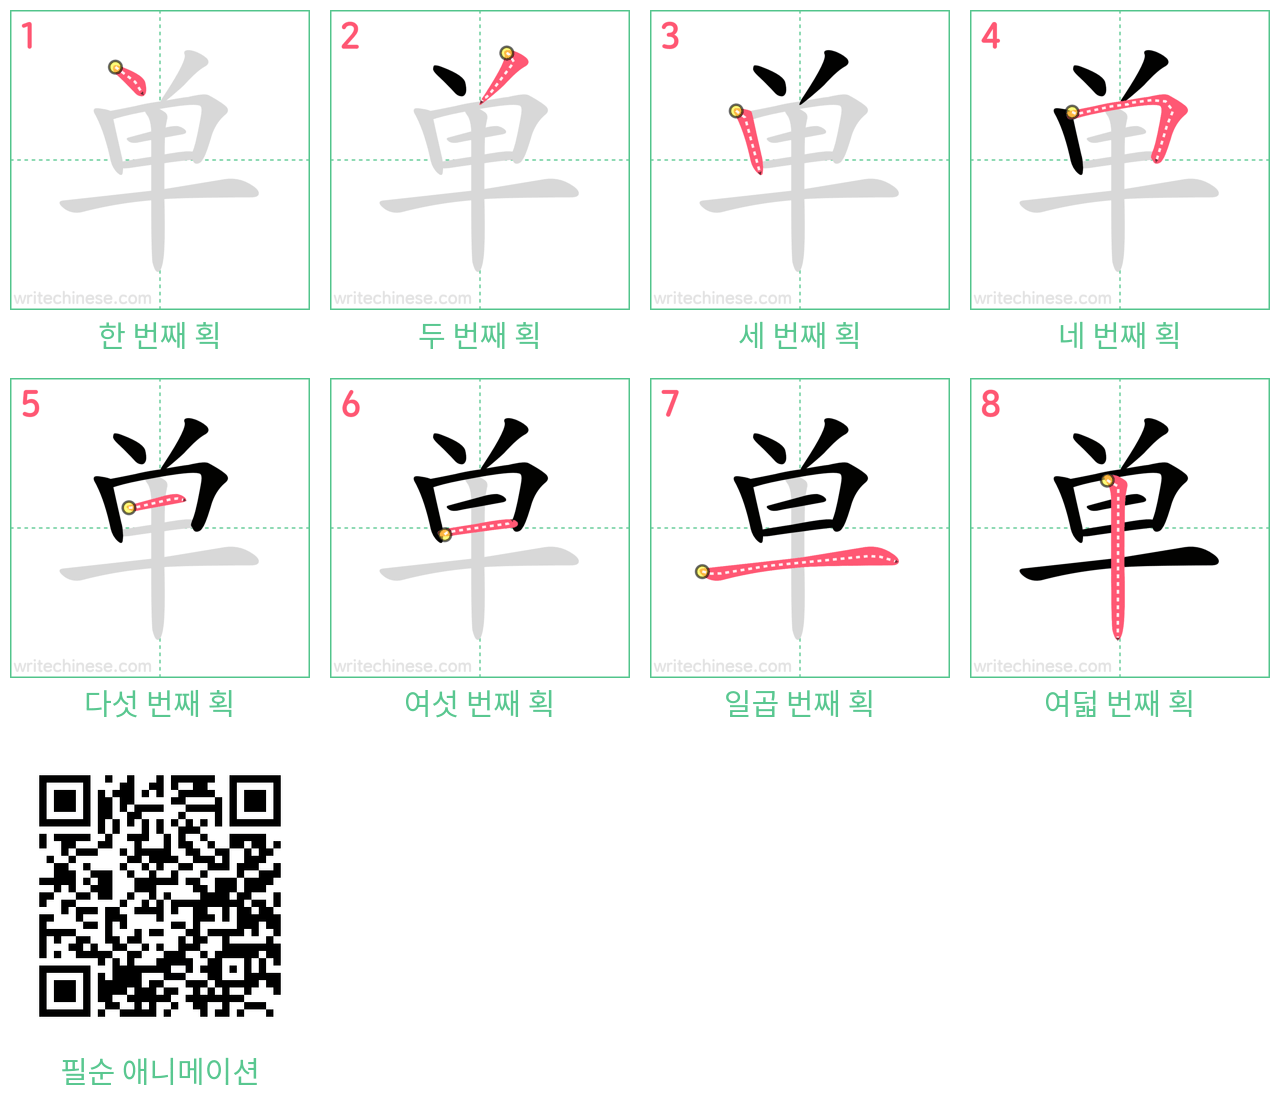 单 step-by-step stroke order diagrams